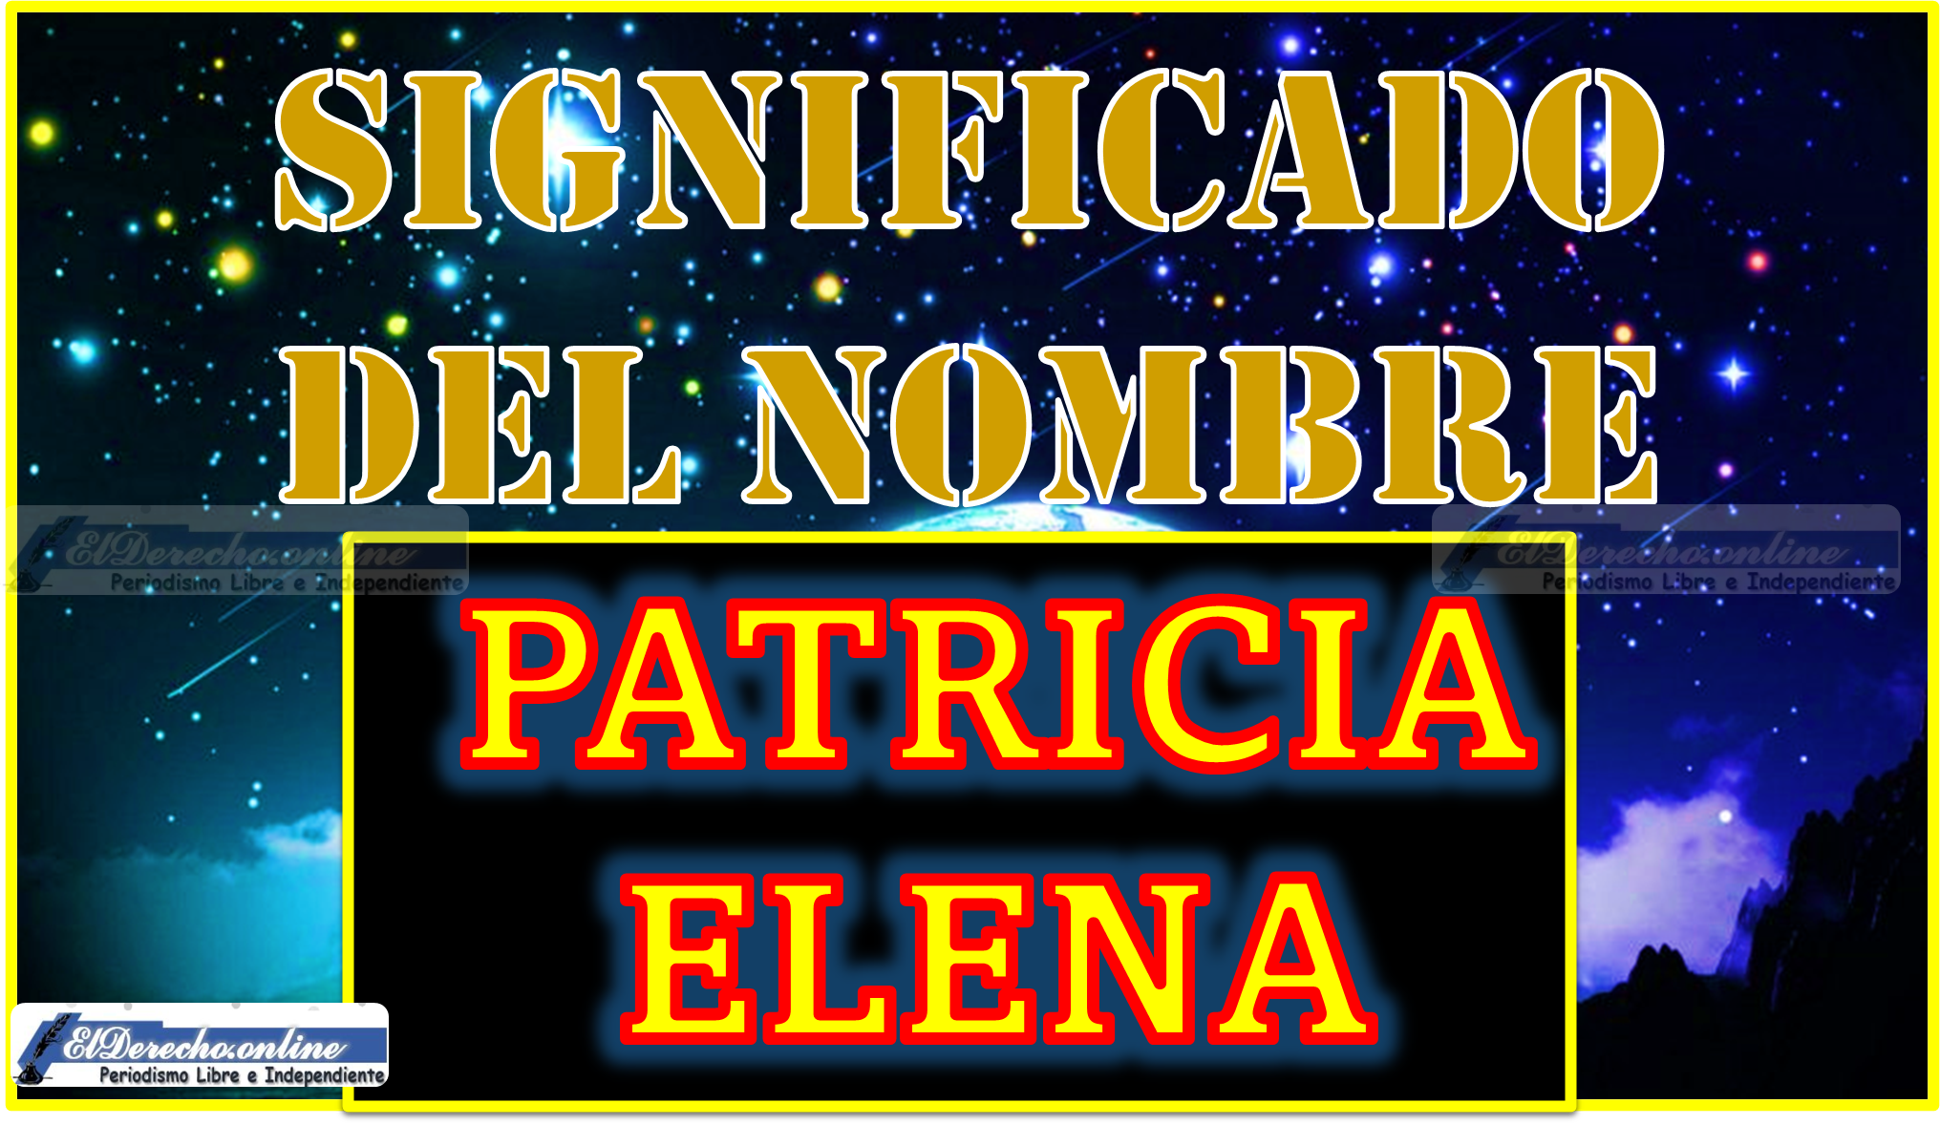 Significado del nombre Patricia Elena, su origen y más